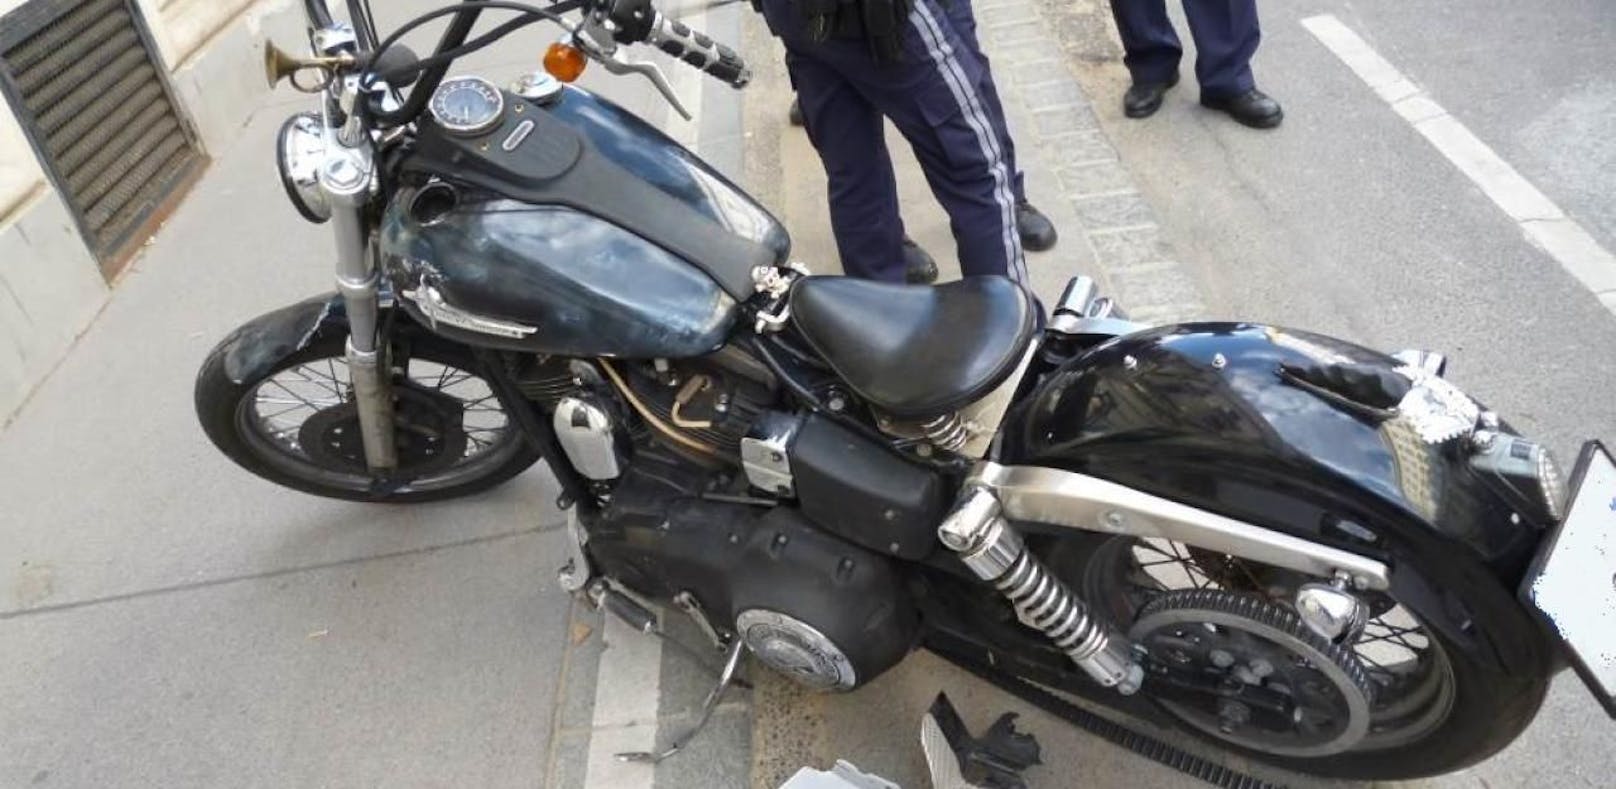 Die Polizei gab einen Warnschuss ab, um den aggressiven Motorradlenker nach der Verfolgungsjagd zu bändigen.